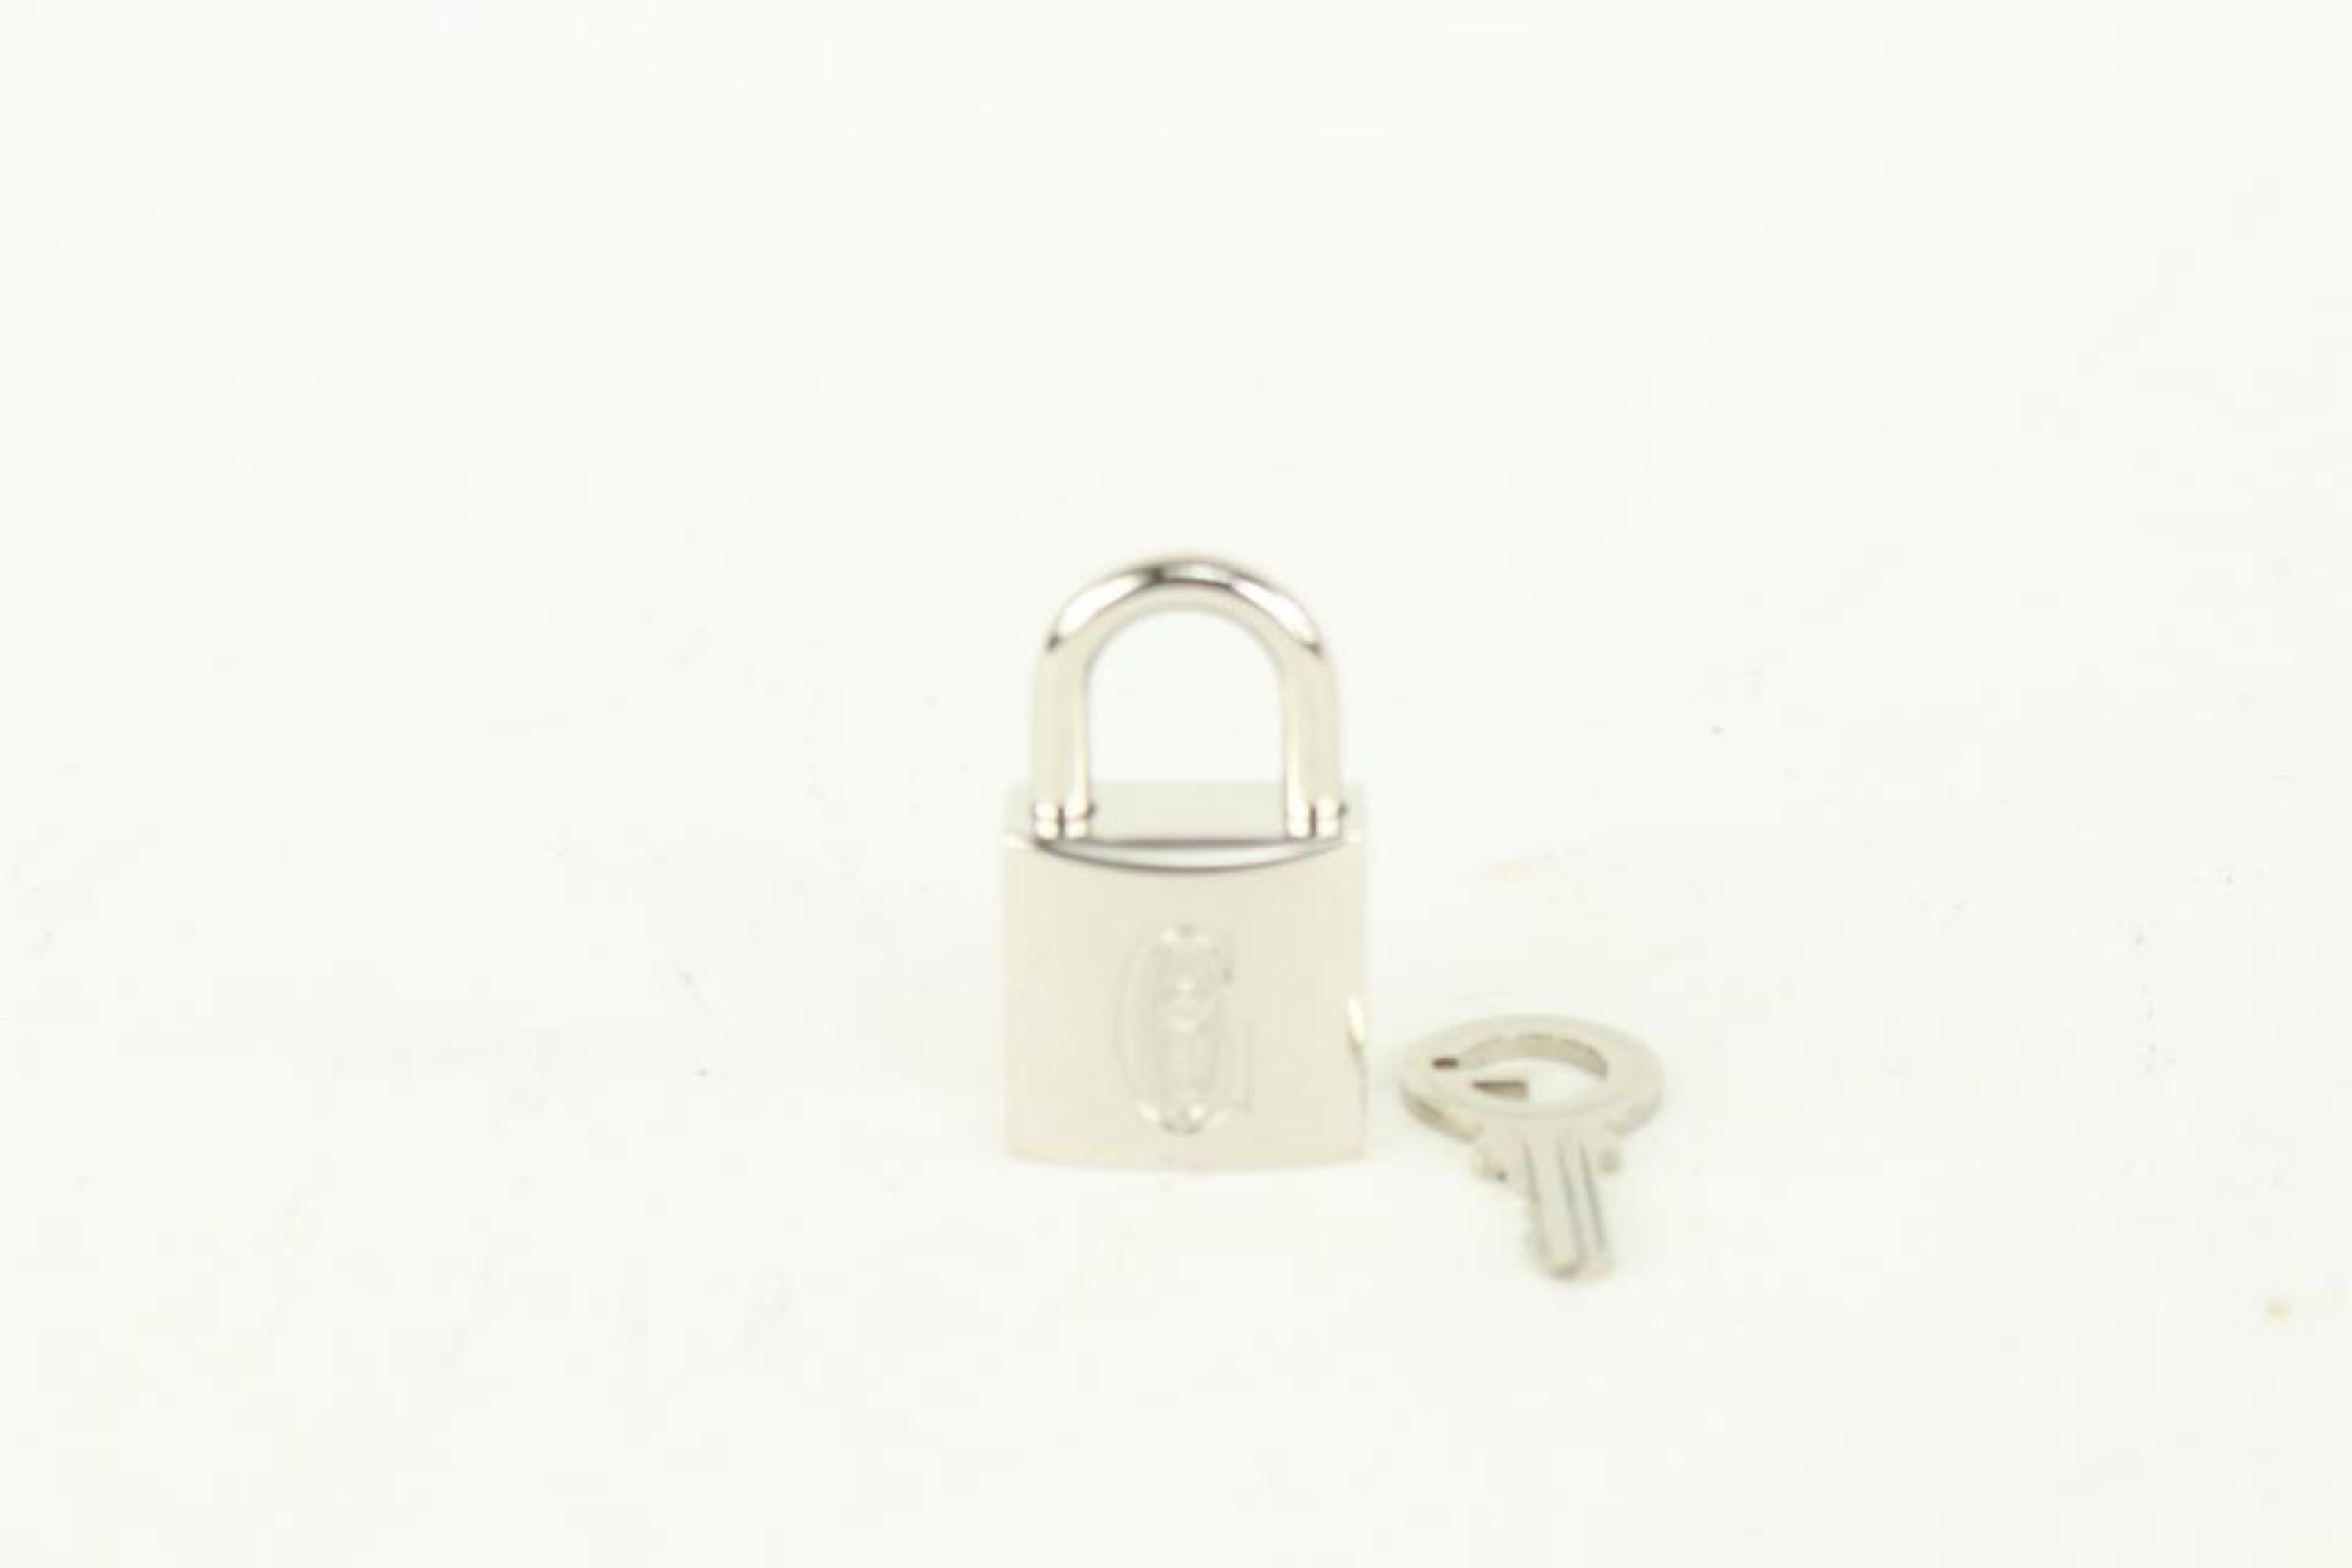 Goyard Silver Lock and Key Set Cadena Bag Charm 1012gy30 1